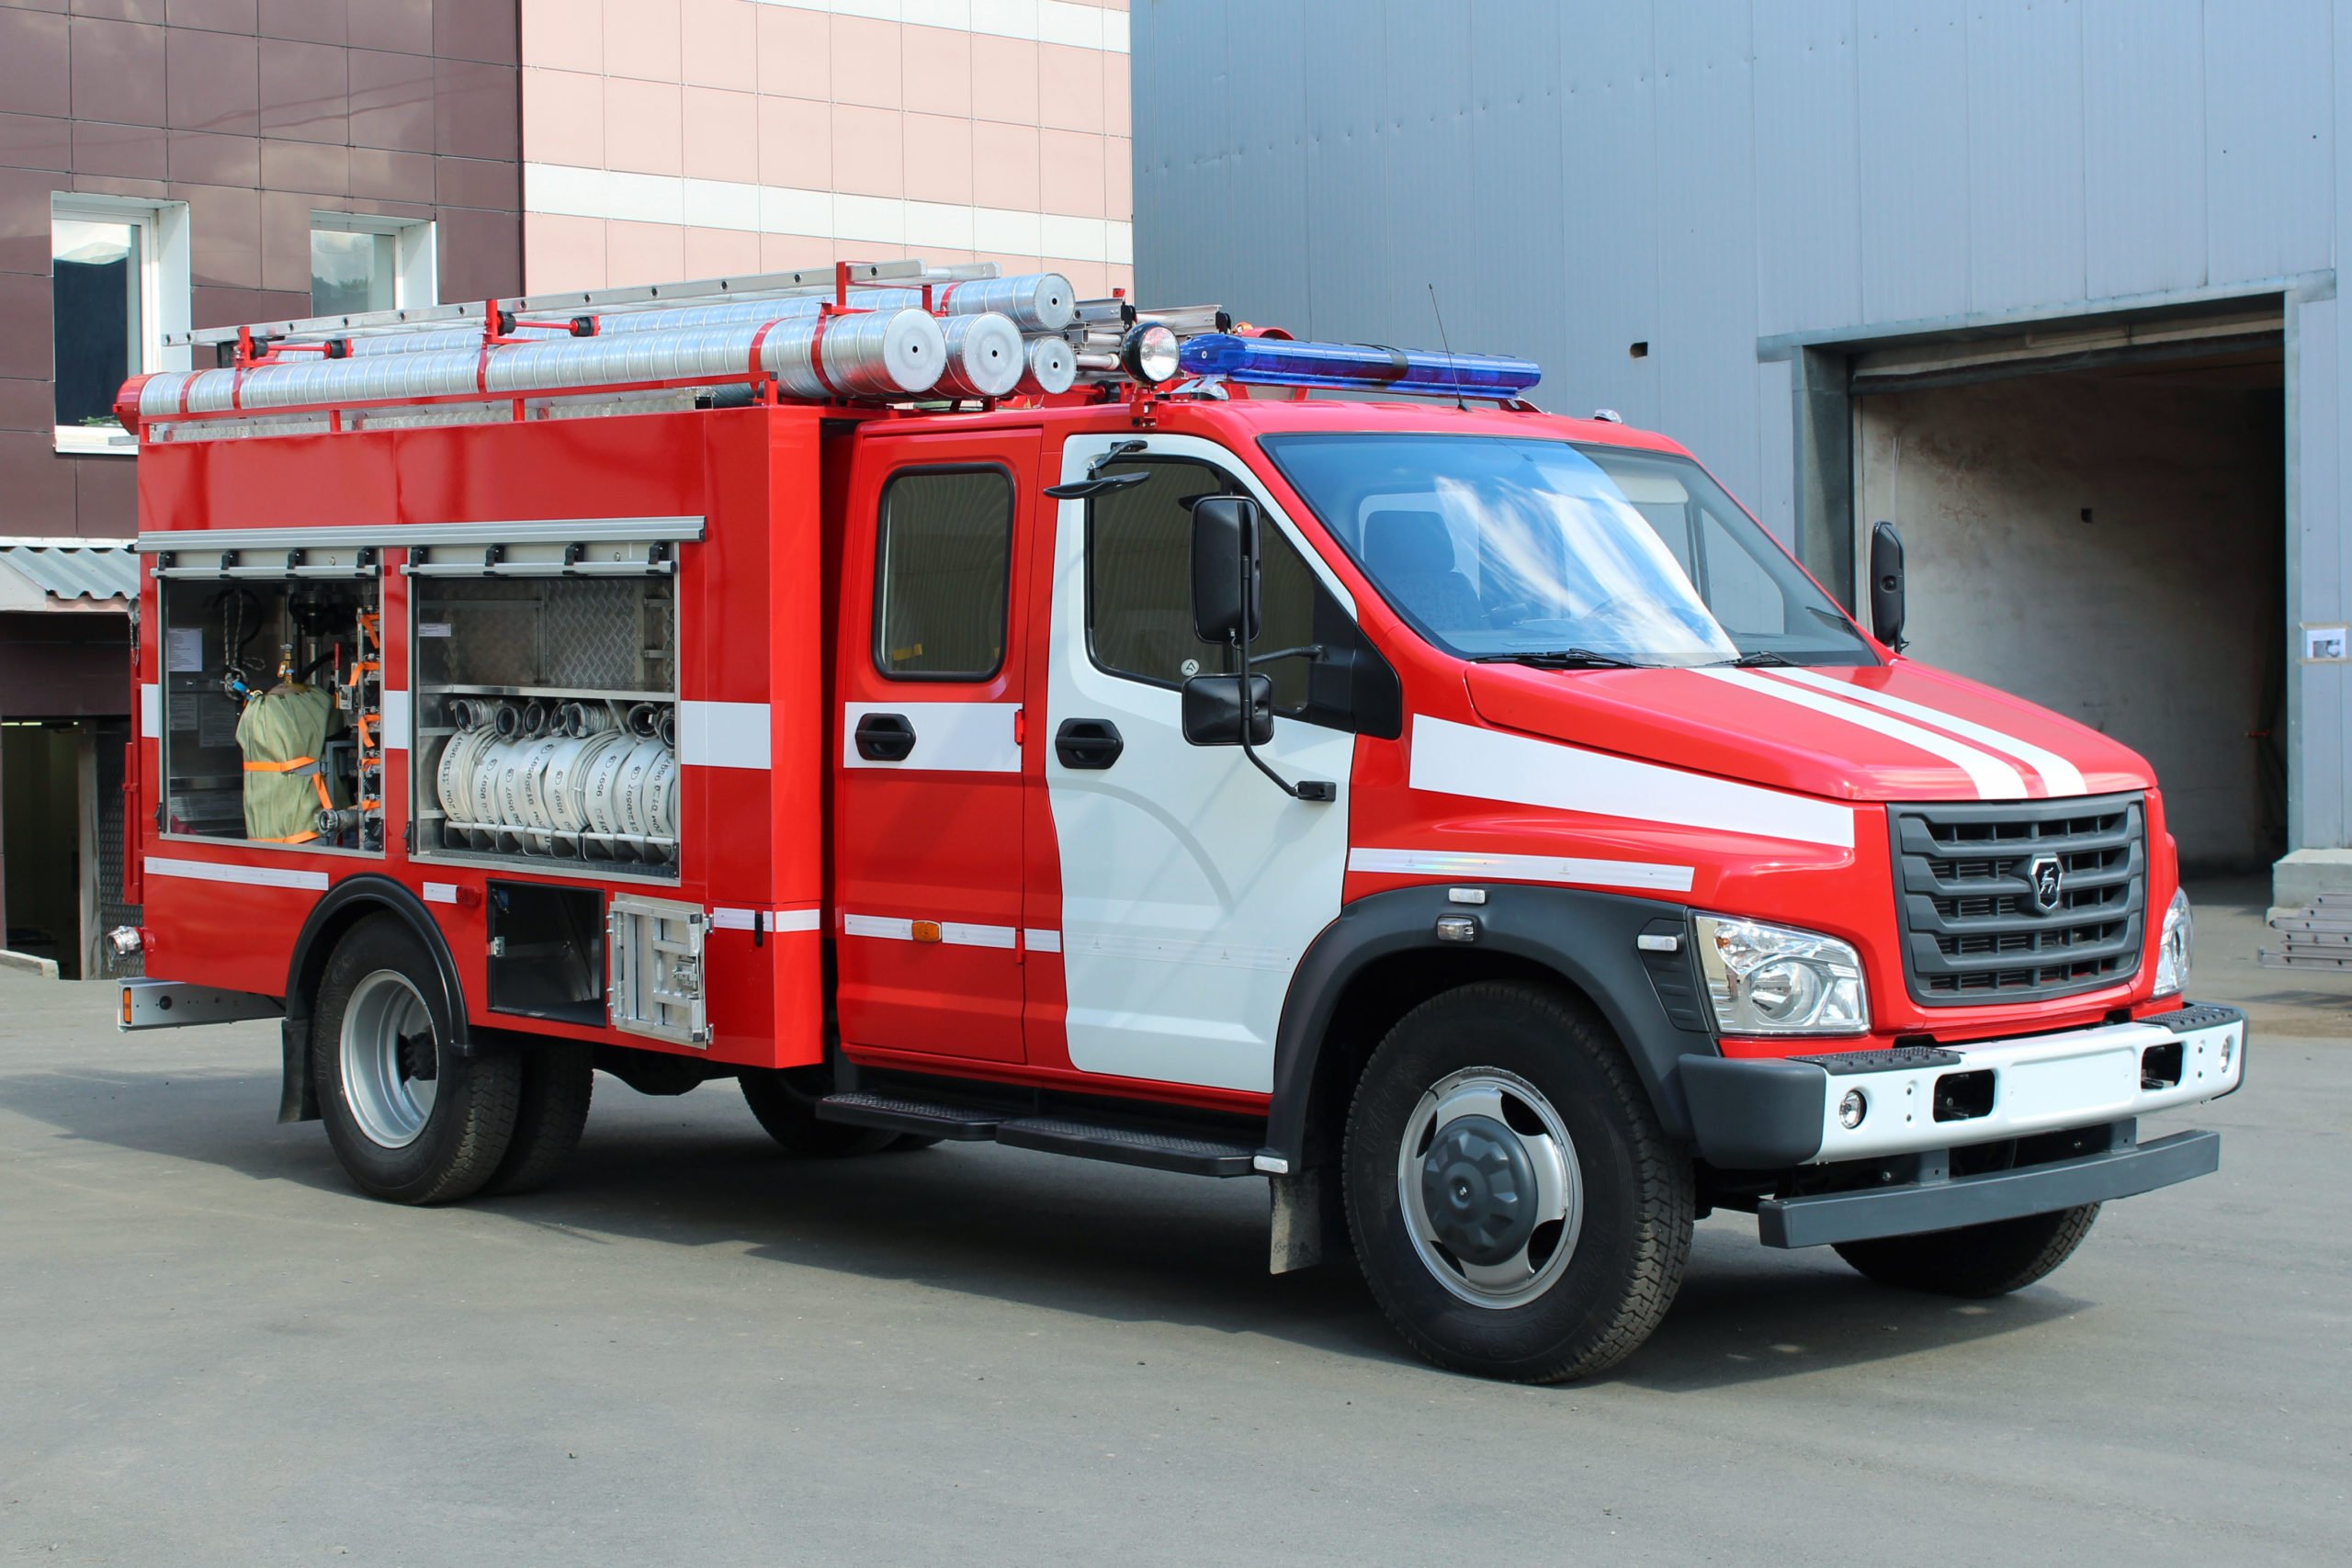 Пожарные аварийно спасательные автомобили конспект